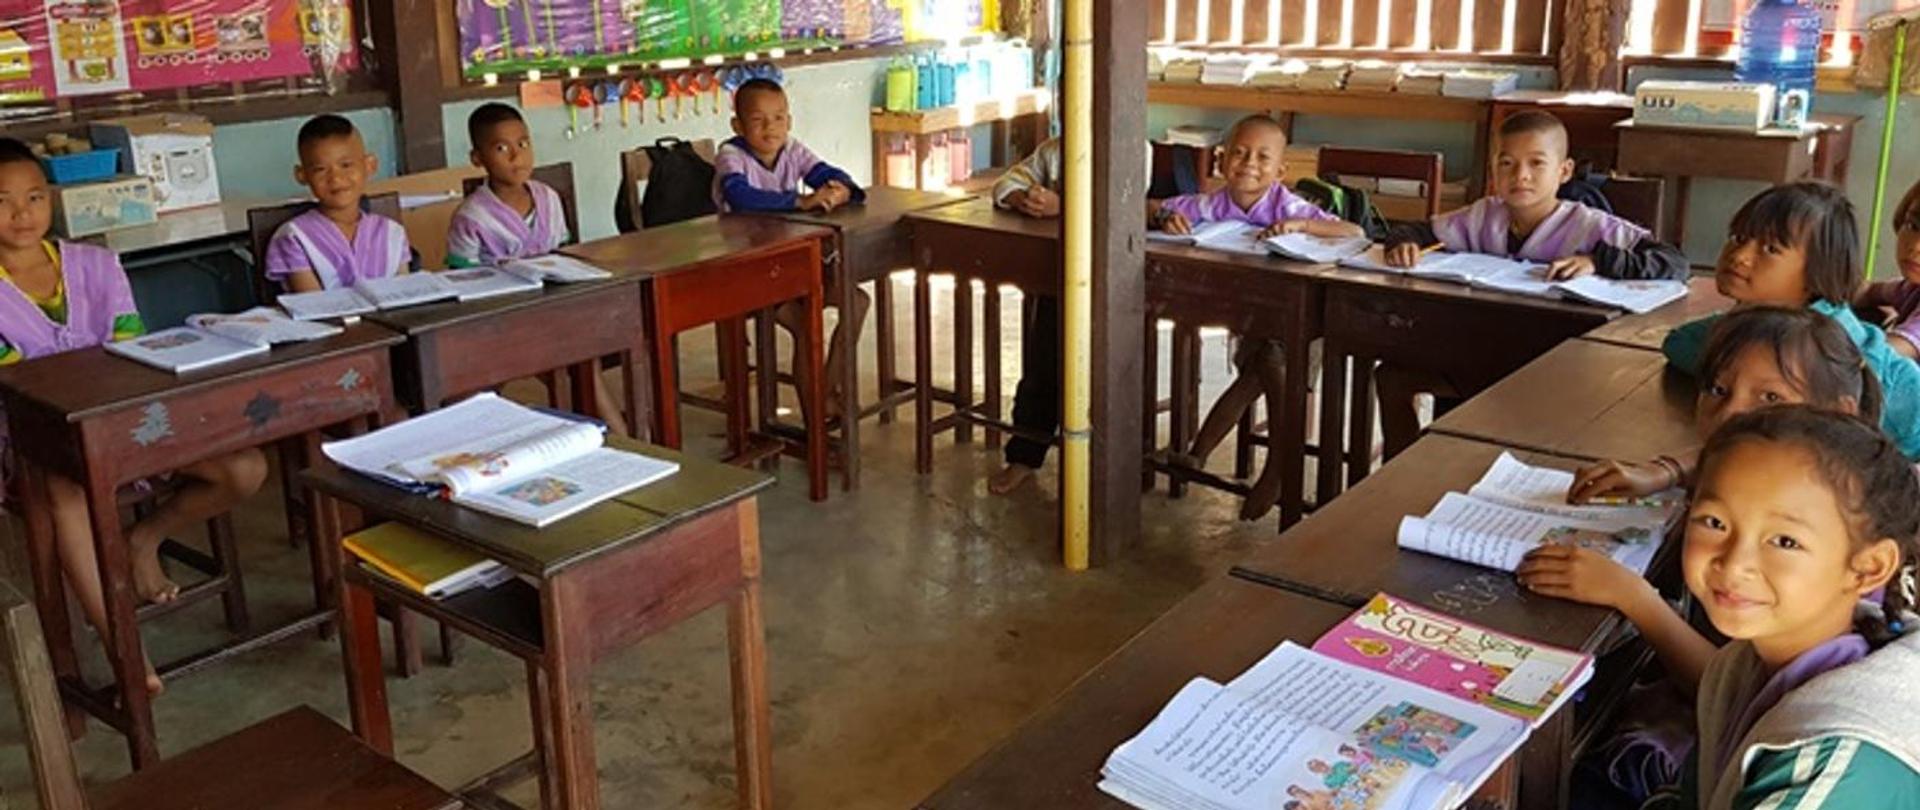 Children sitting at school desks with books